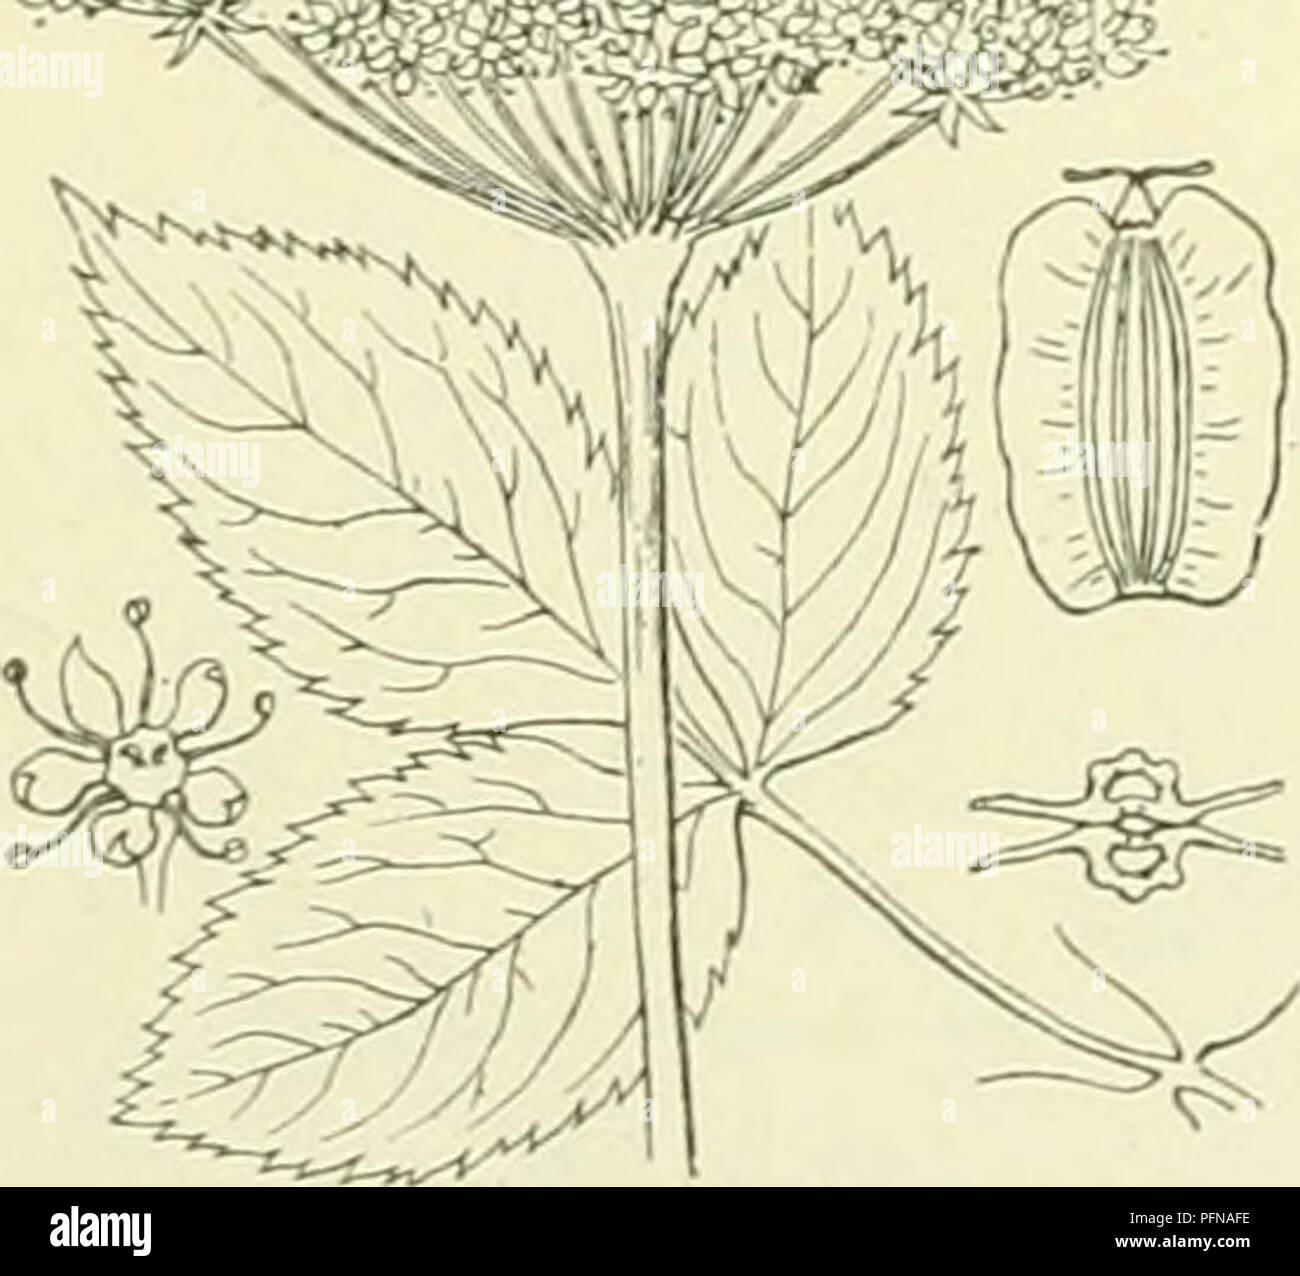 . De flora van Nederland. Plants. Selinum Carvifolia Fig. 539. 24. Angelica'^) Trn. A. silvéstris 4) L. Engelwortel (fig. 540). Deze plant heeft een korten, scheeven, veelhoofdigen wortel met vele vezels. De stengel is rechtopstaand, rolrond, gestreept, naar boven iets kantig, naar boven vertakt, evenals de bladen ,,..:.vvrfilM^^ beneden kaal, hol, blauwgroen of roodachtig aangeloopen, krachtig. De onderste bladen zijri ;ii^,,^ .;,:, in omtrek driehoekig, 3-voudig gevind. De blaadjes zijn meest eirond, gezaagd en loopen niet in den ronden, iets gegroefden steel af. De bladscheeden zijn buikig  Stock Photo